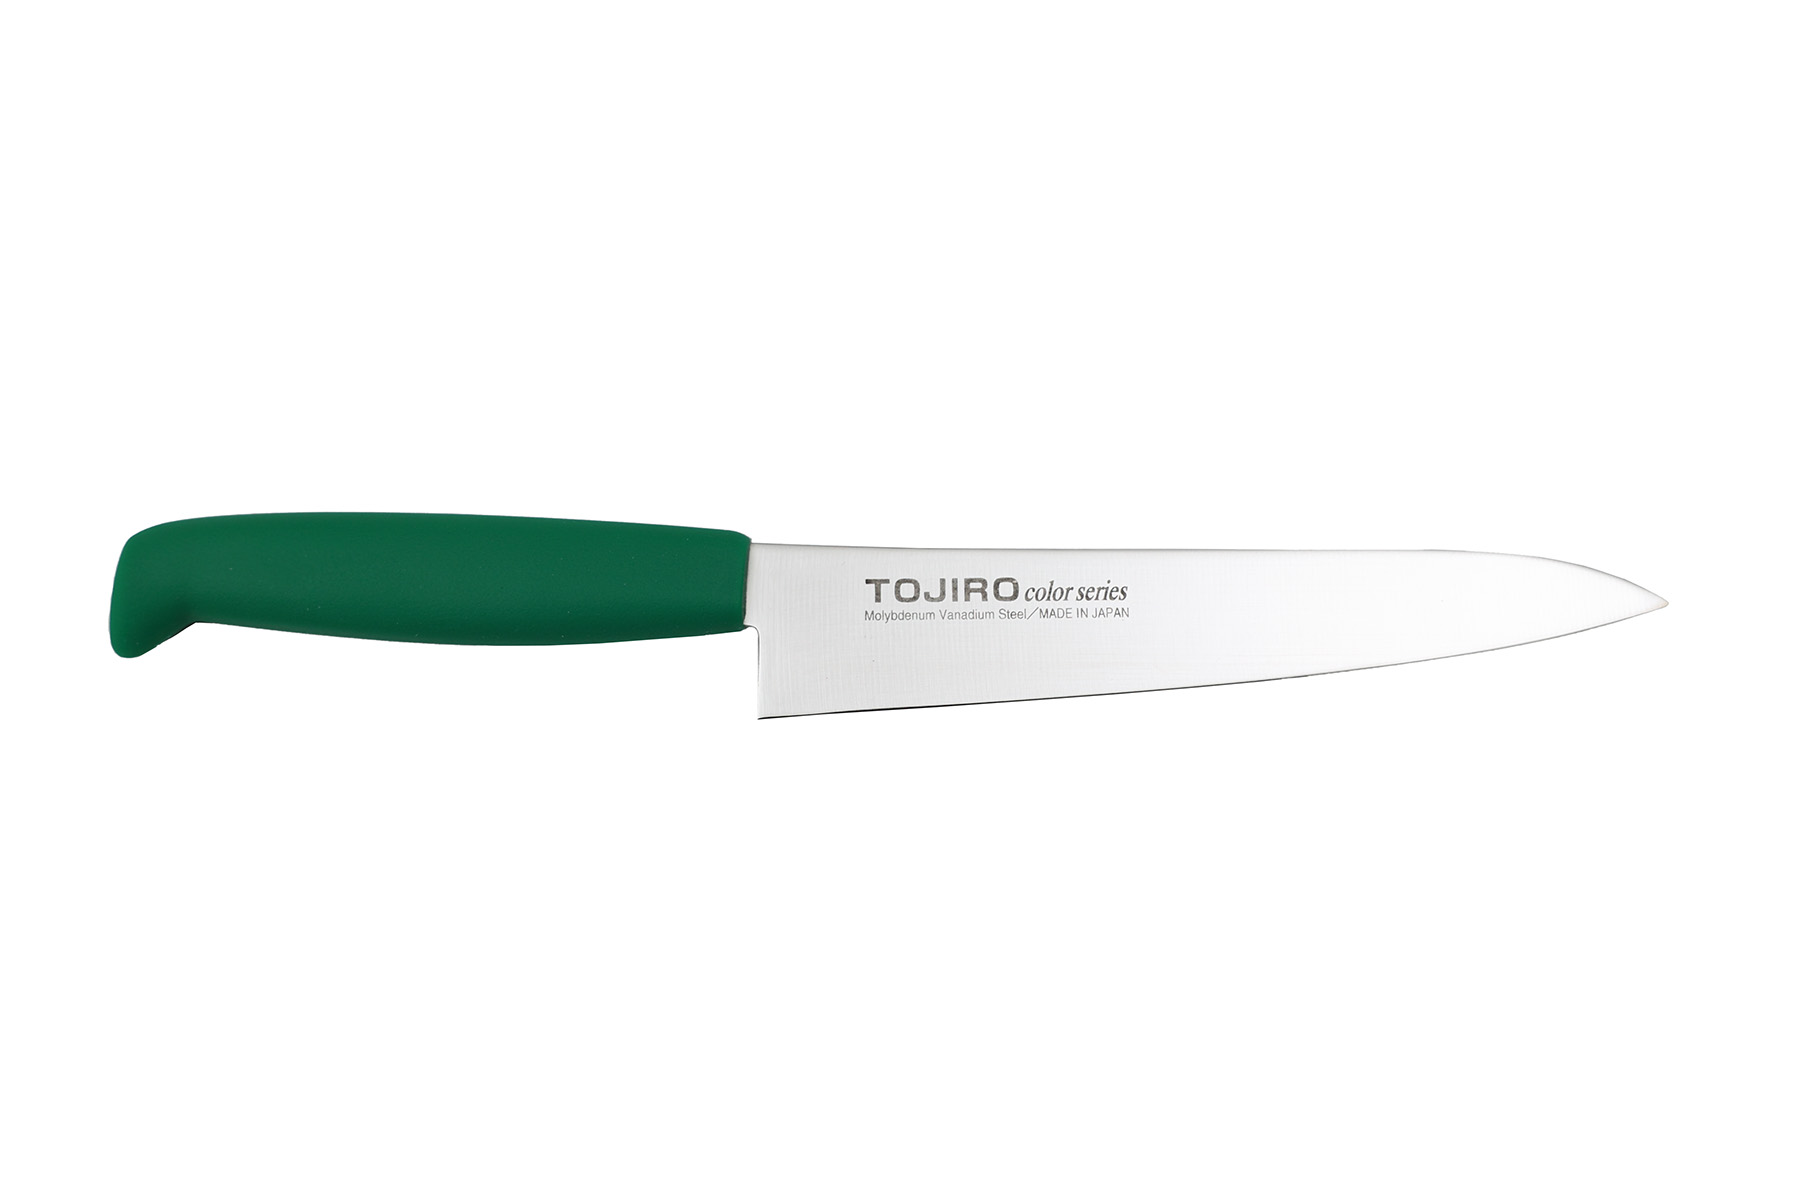 Couteau japonais Tojiro Color vert - Couteau petty 15 cm